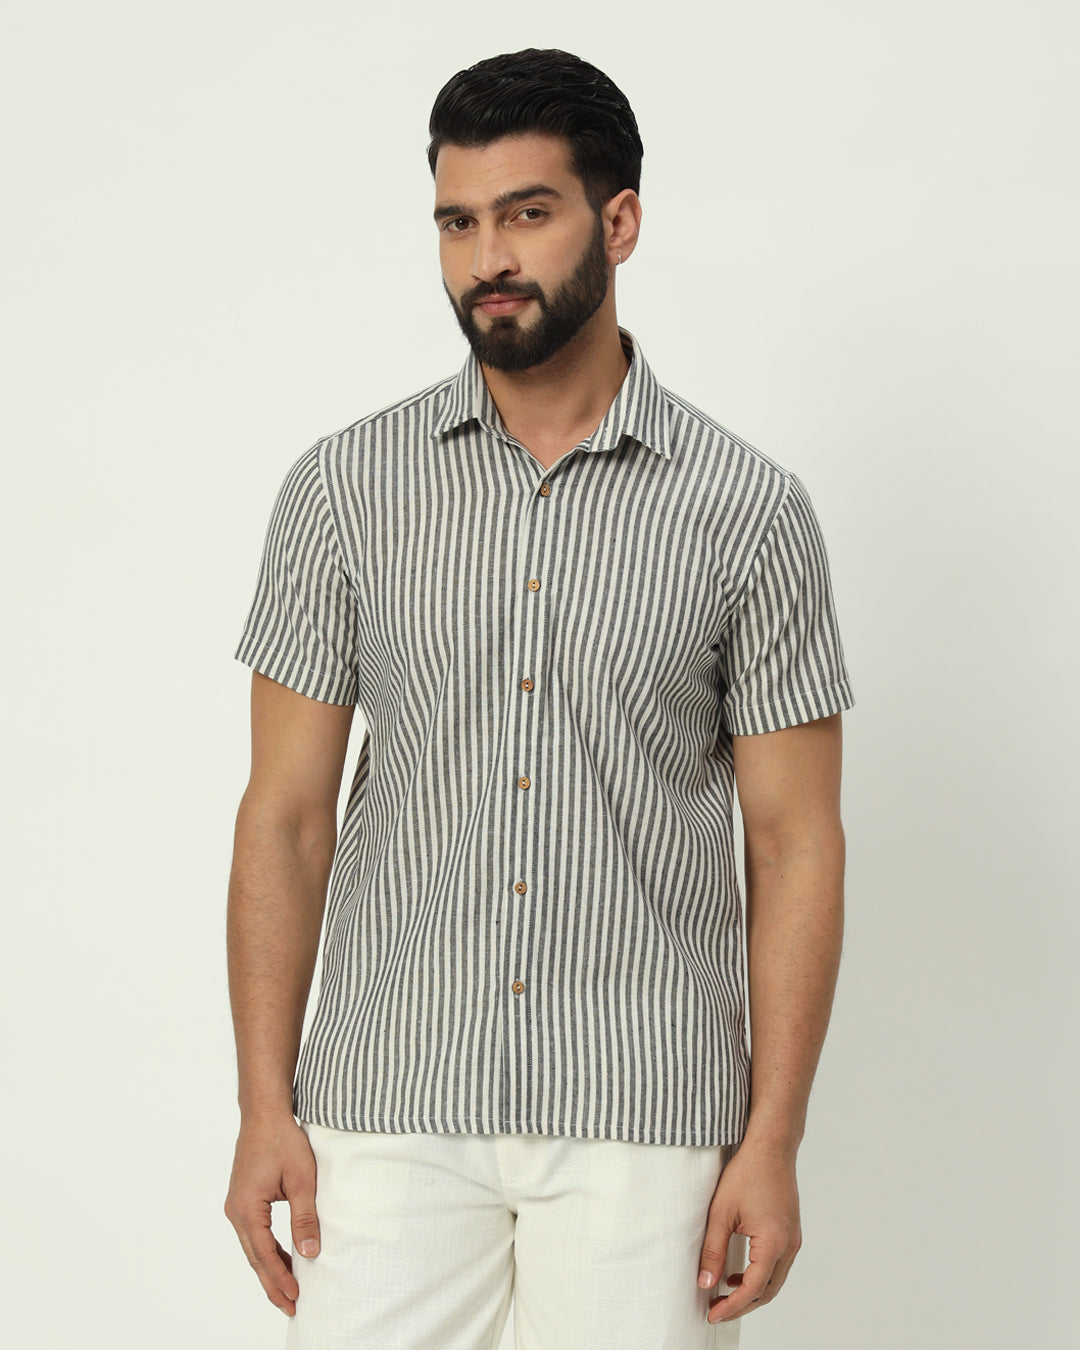 Black & White Stripes Regular Half Sleeves Men's Shirt